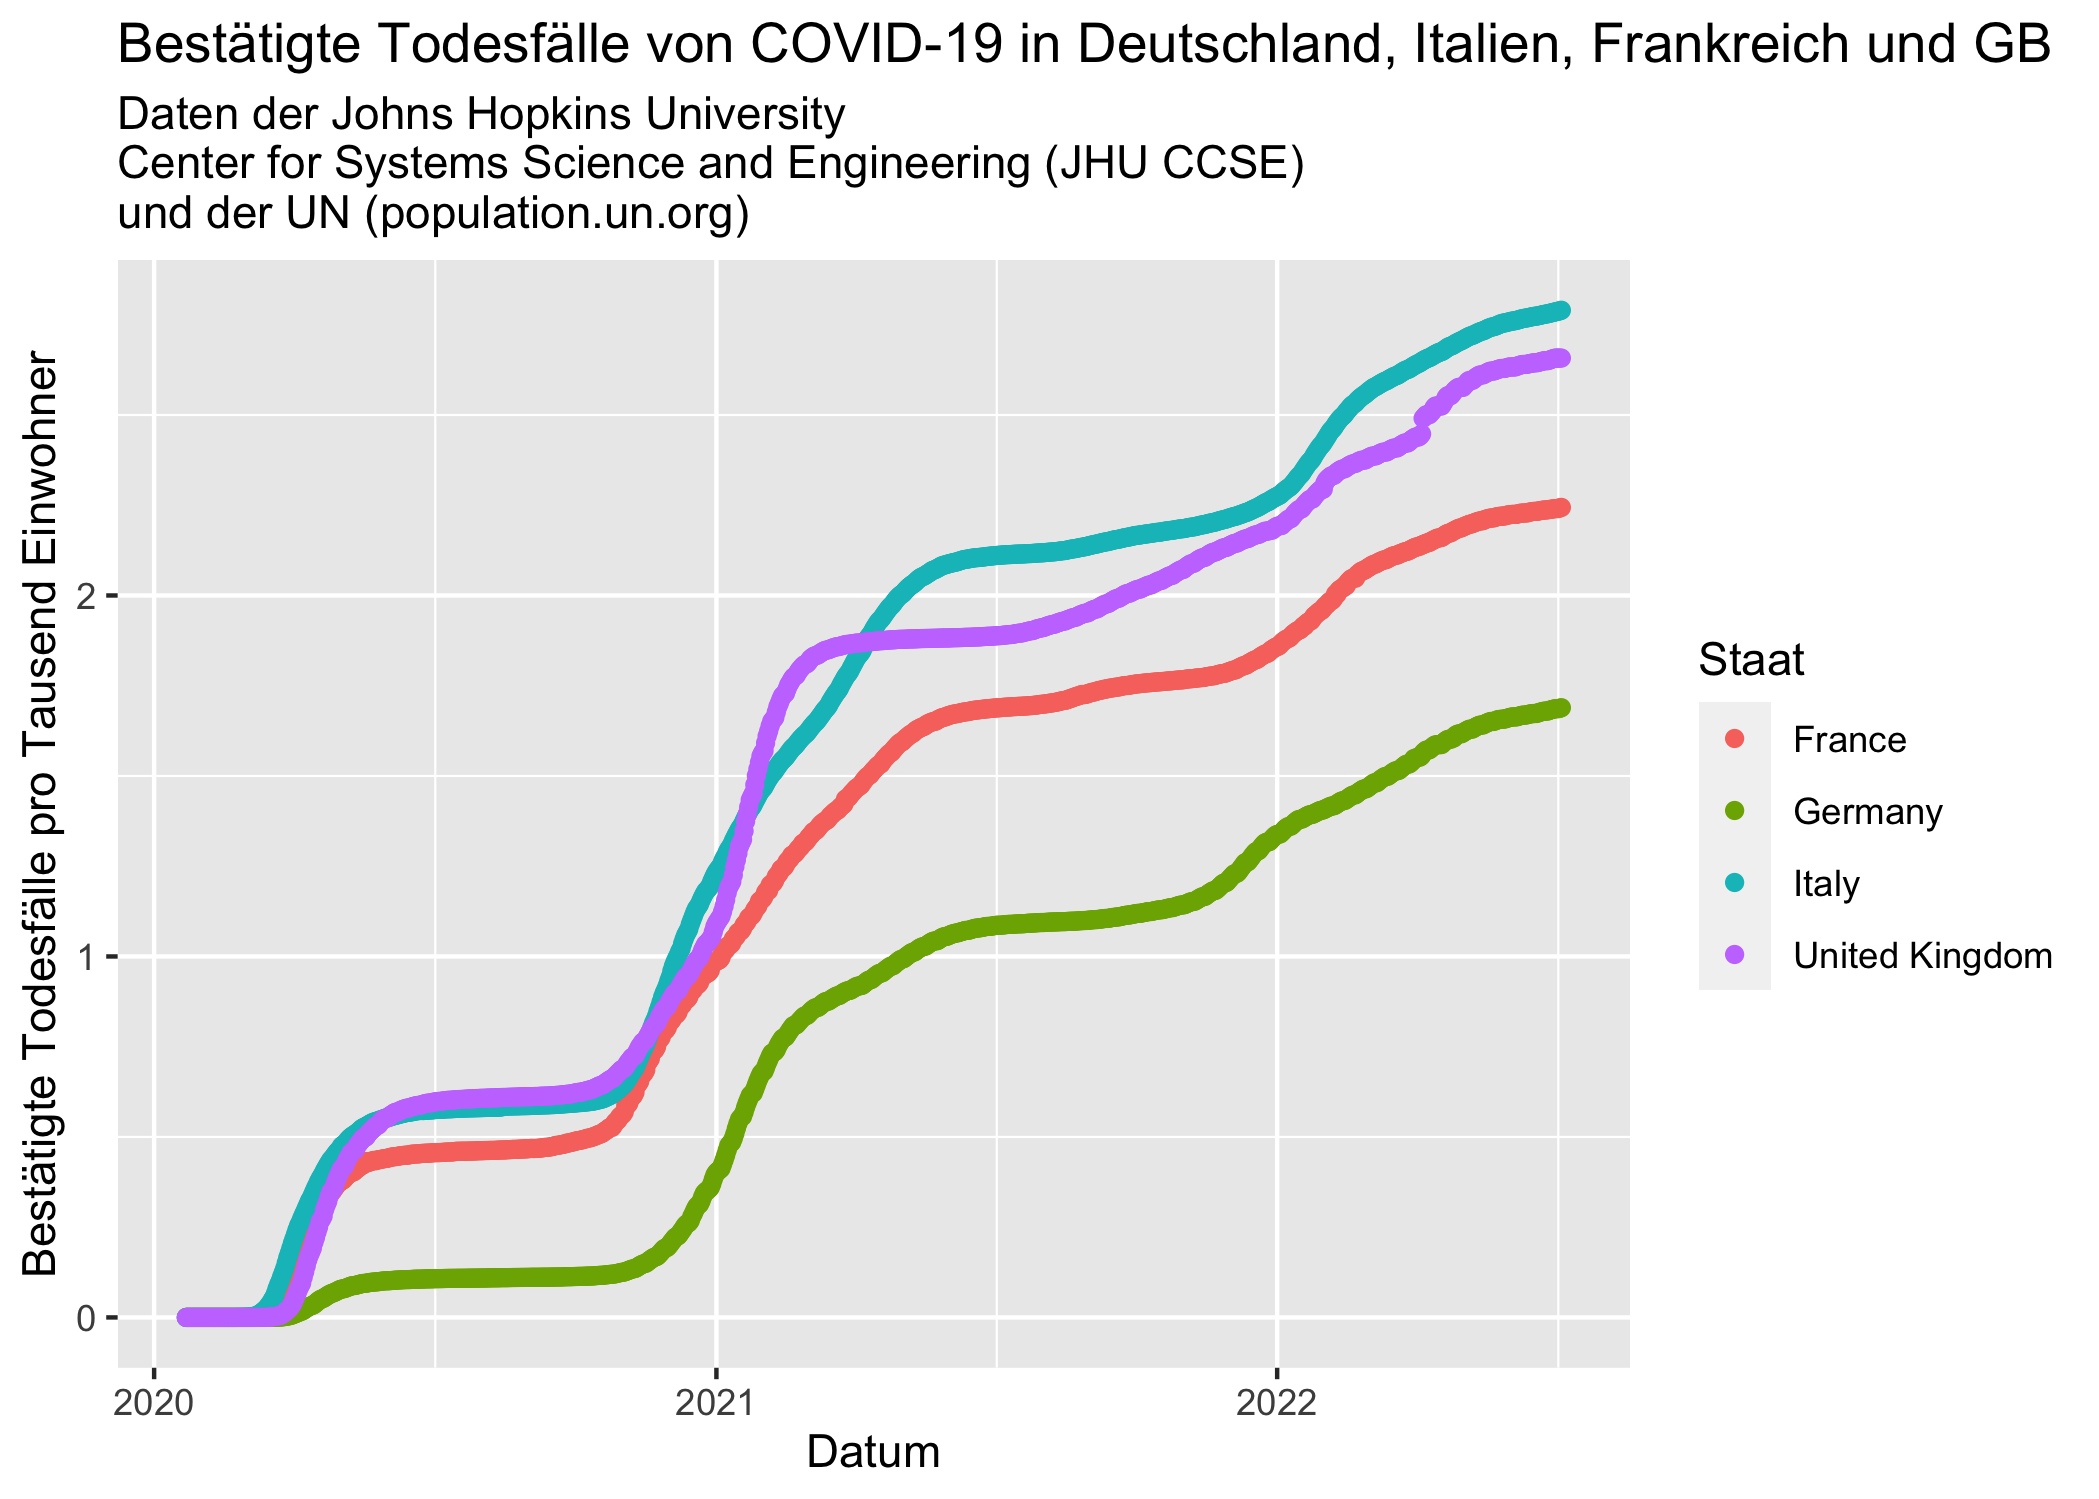 Bestätigte Todesfälle von COVID-19 in Deutschland, zur besseren Vergleichbarkeit im Vergleich mit Italien, Frankreich und Großbritannien